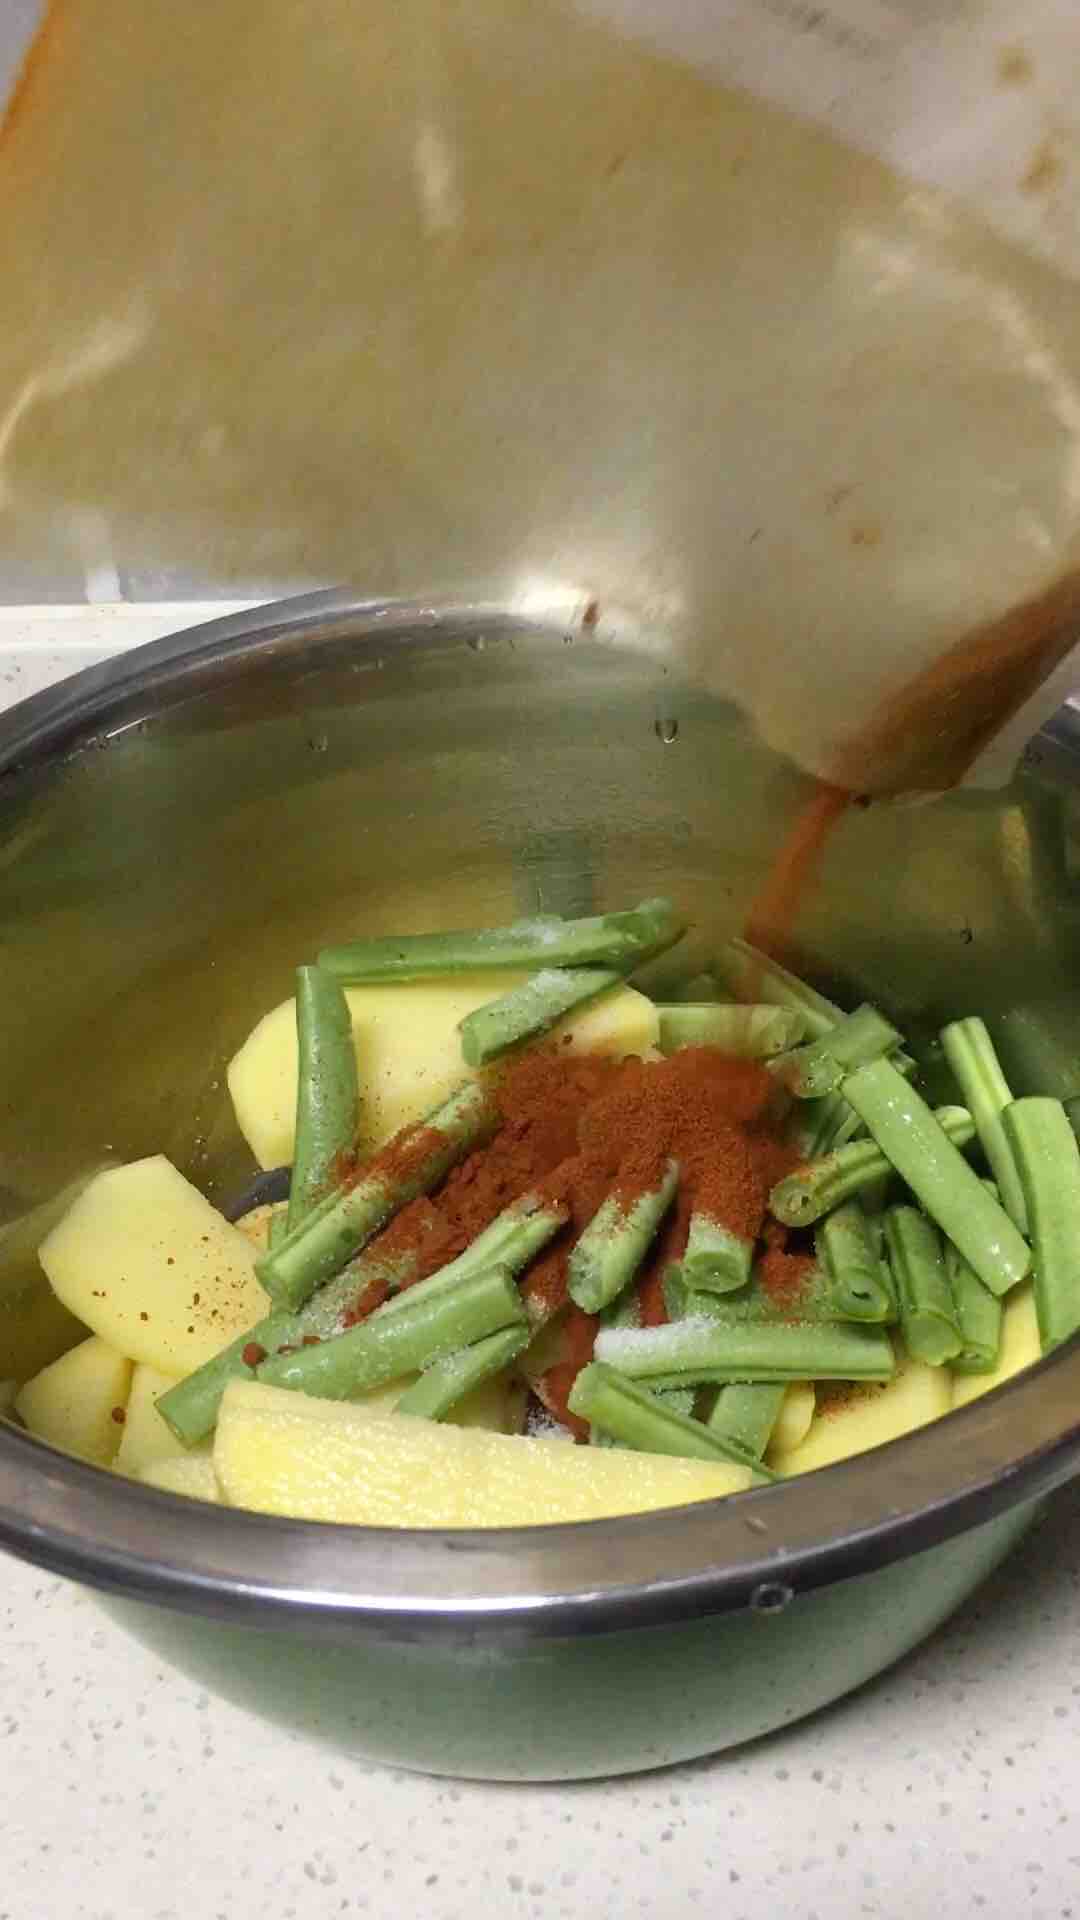 Home-made Stew Pot recipe